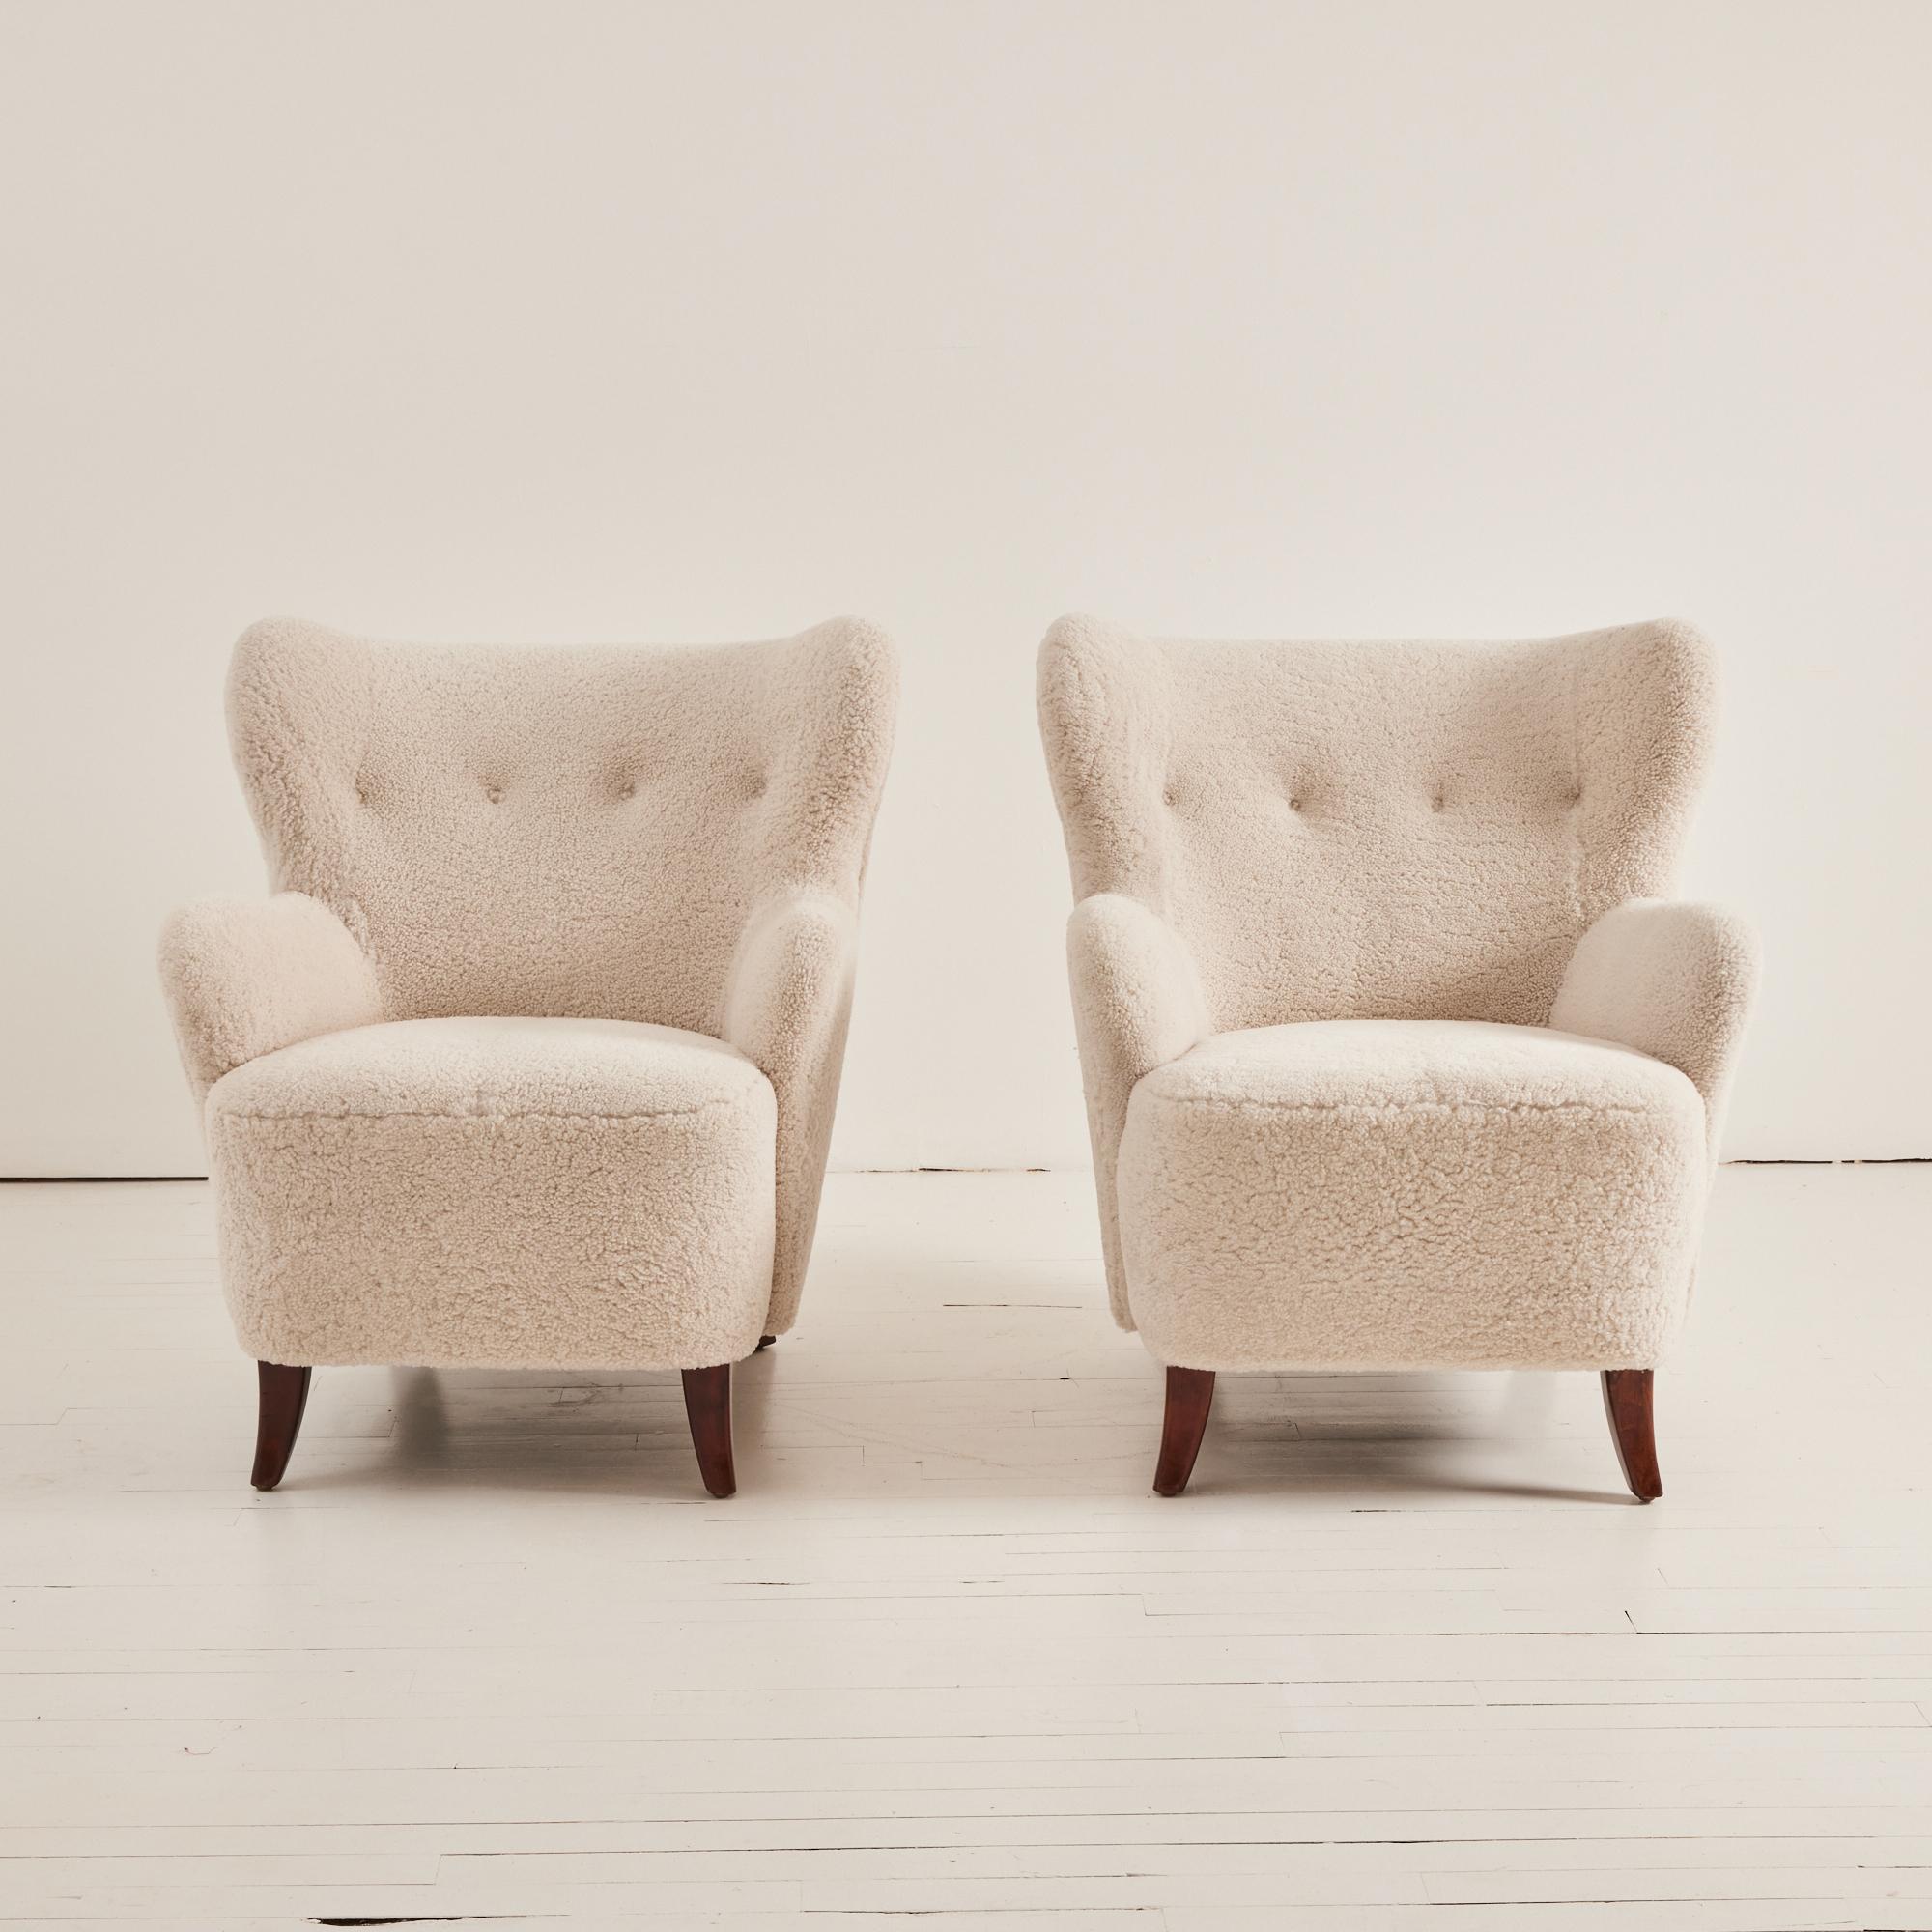 Swedish Sheepskin Lounge Chairs, 1950s - Set of 2 1